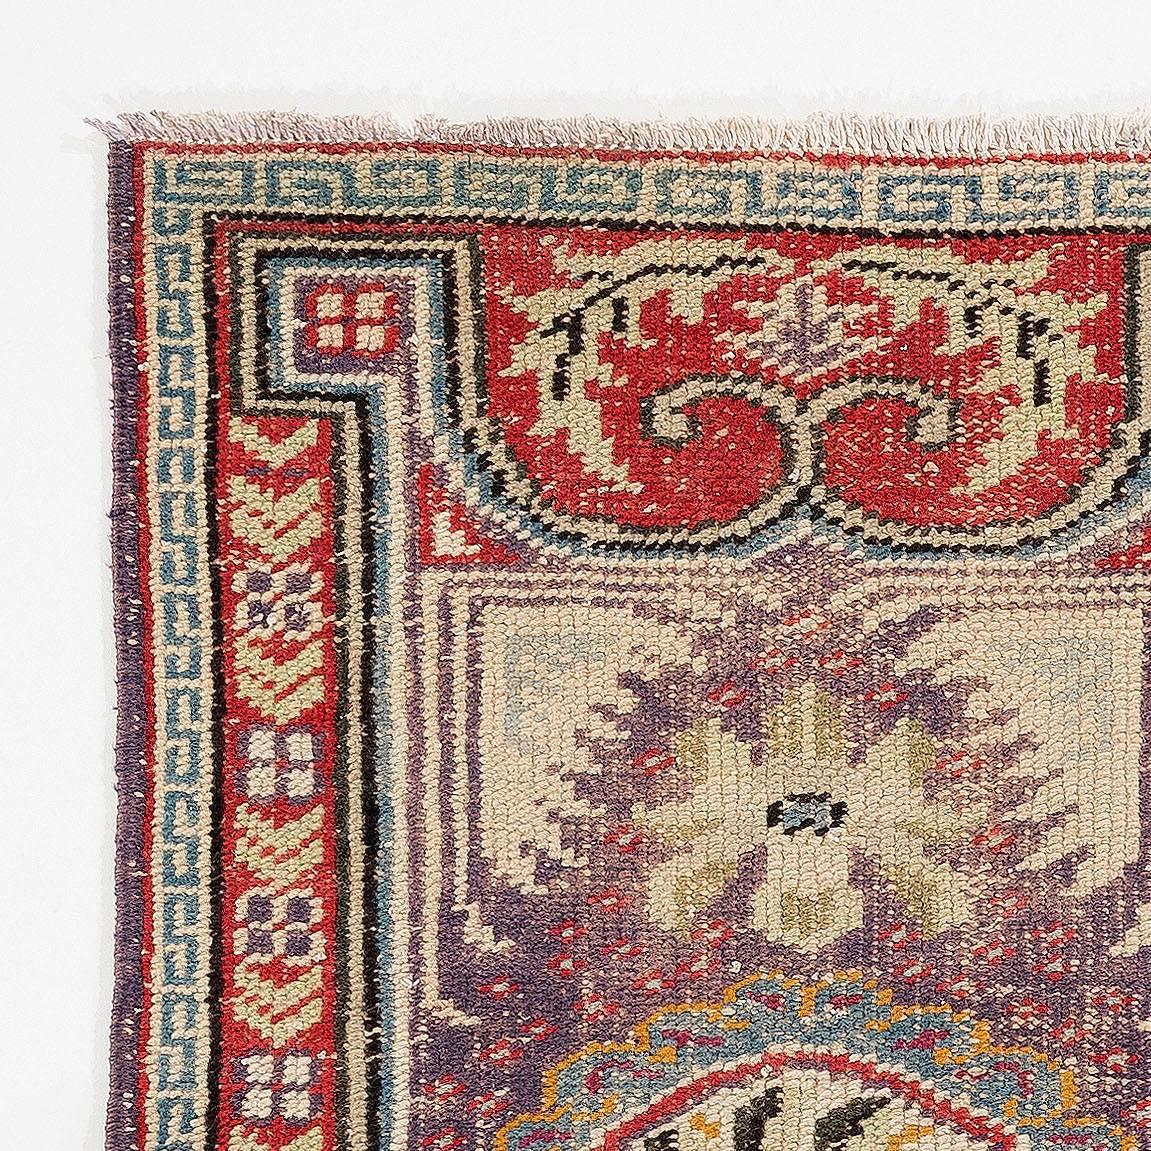 Vintage Tibetan rug or doormat.